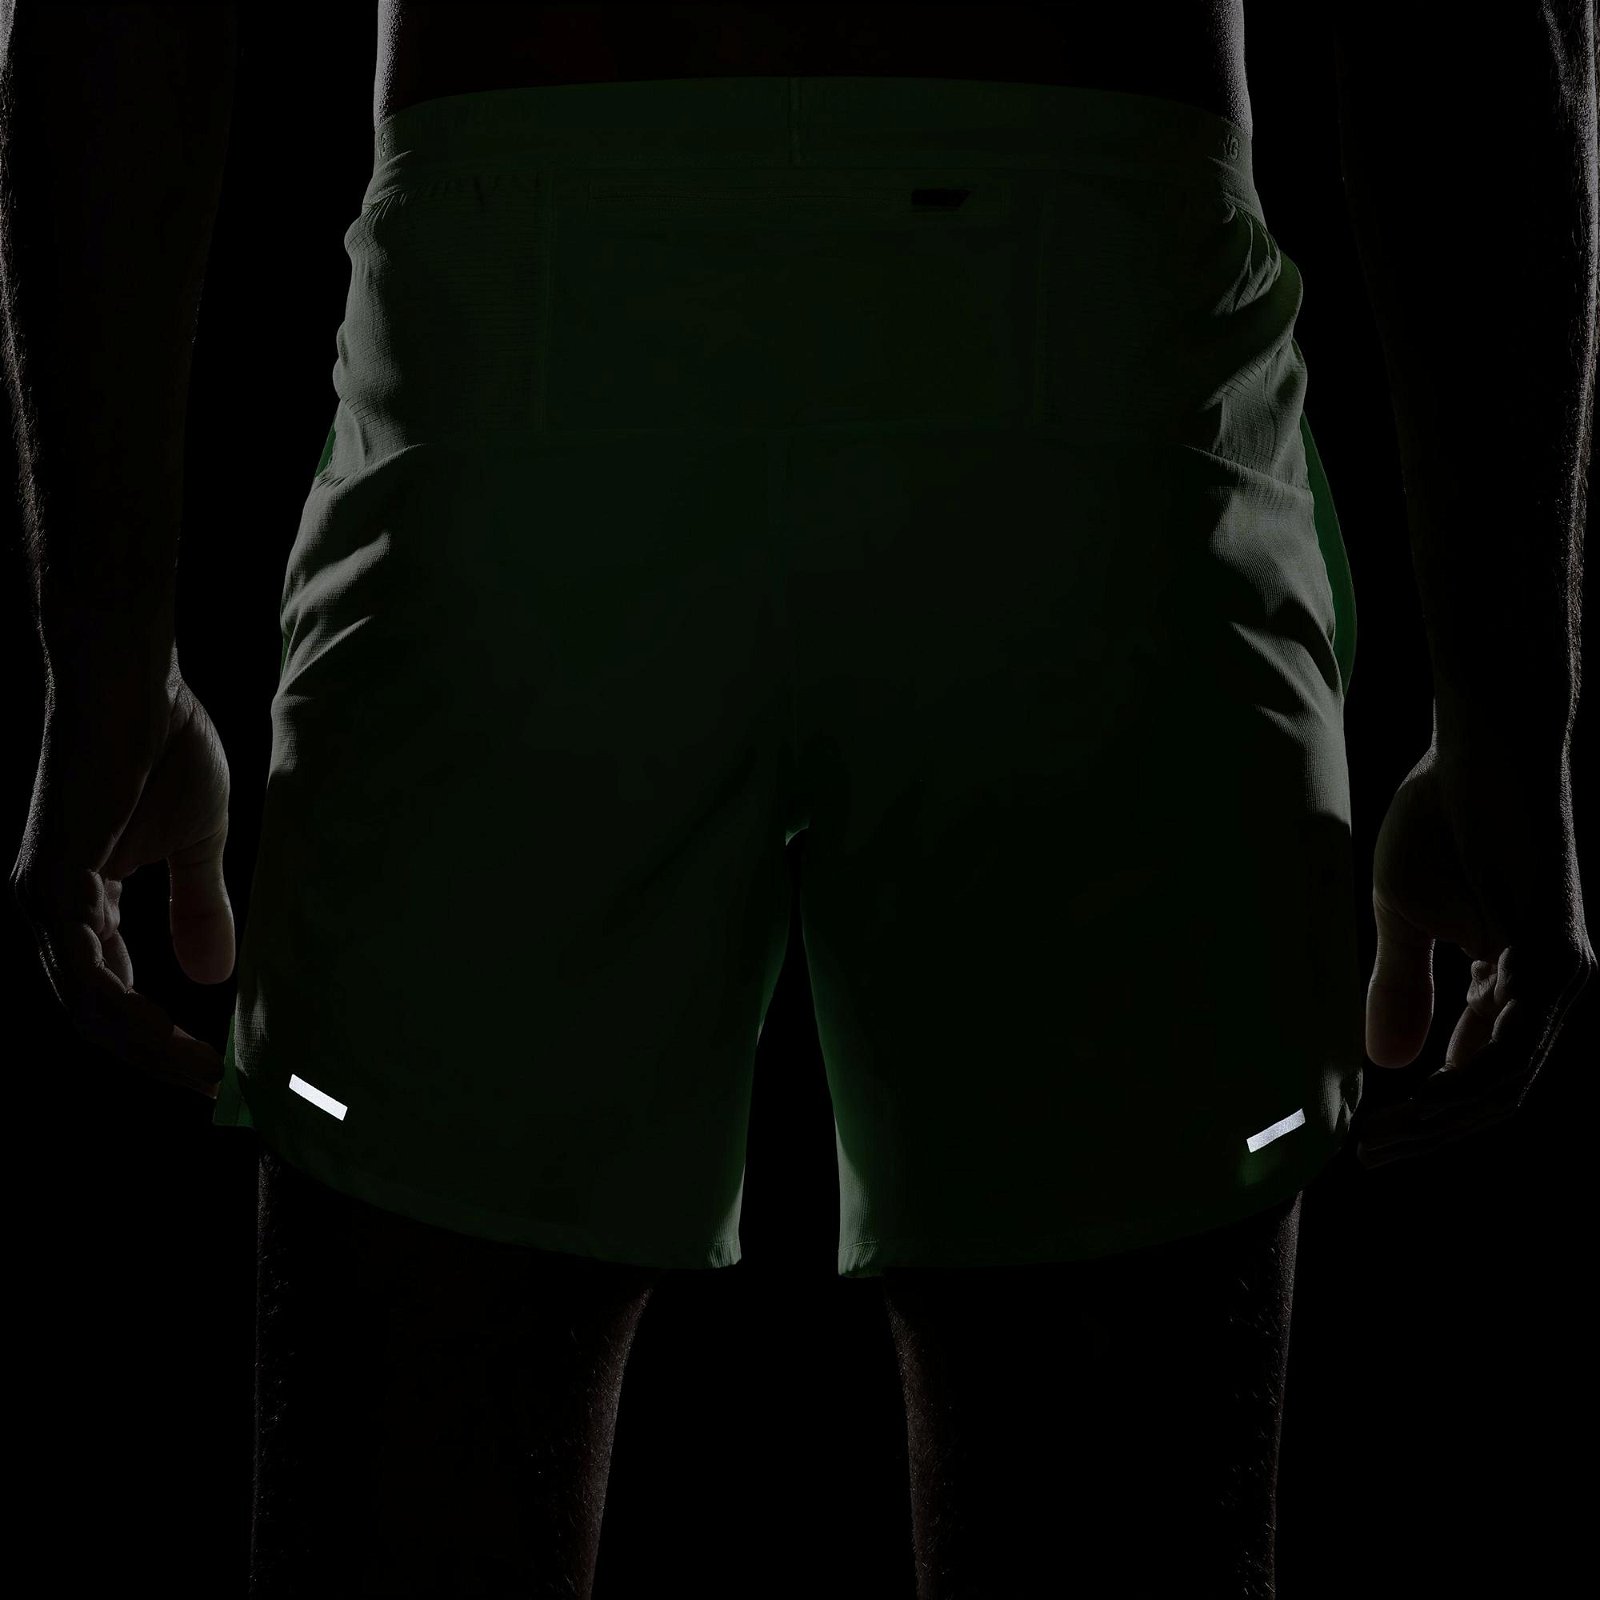 Nike Dri-FIT Stride 18 cm Erkek Yeşil Şort